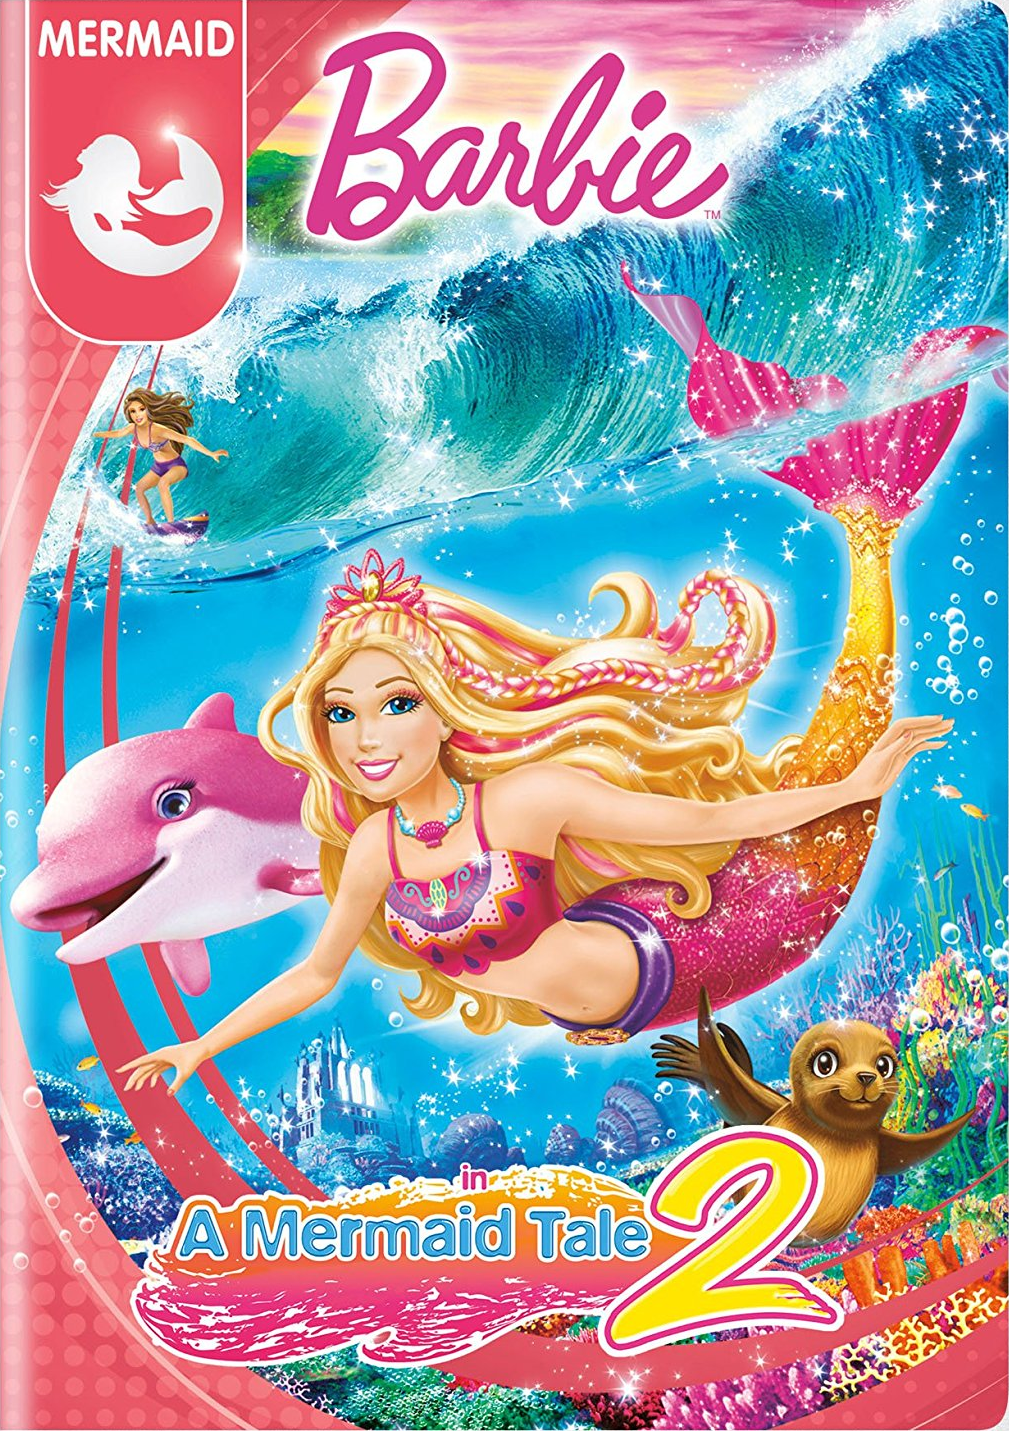 barbie in a mermaid tale 2 movie